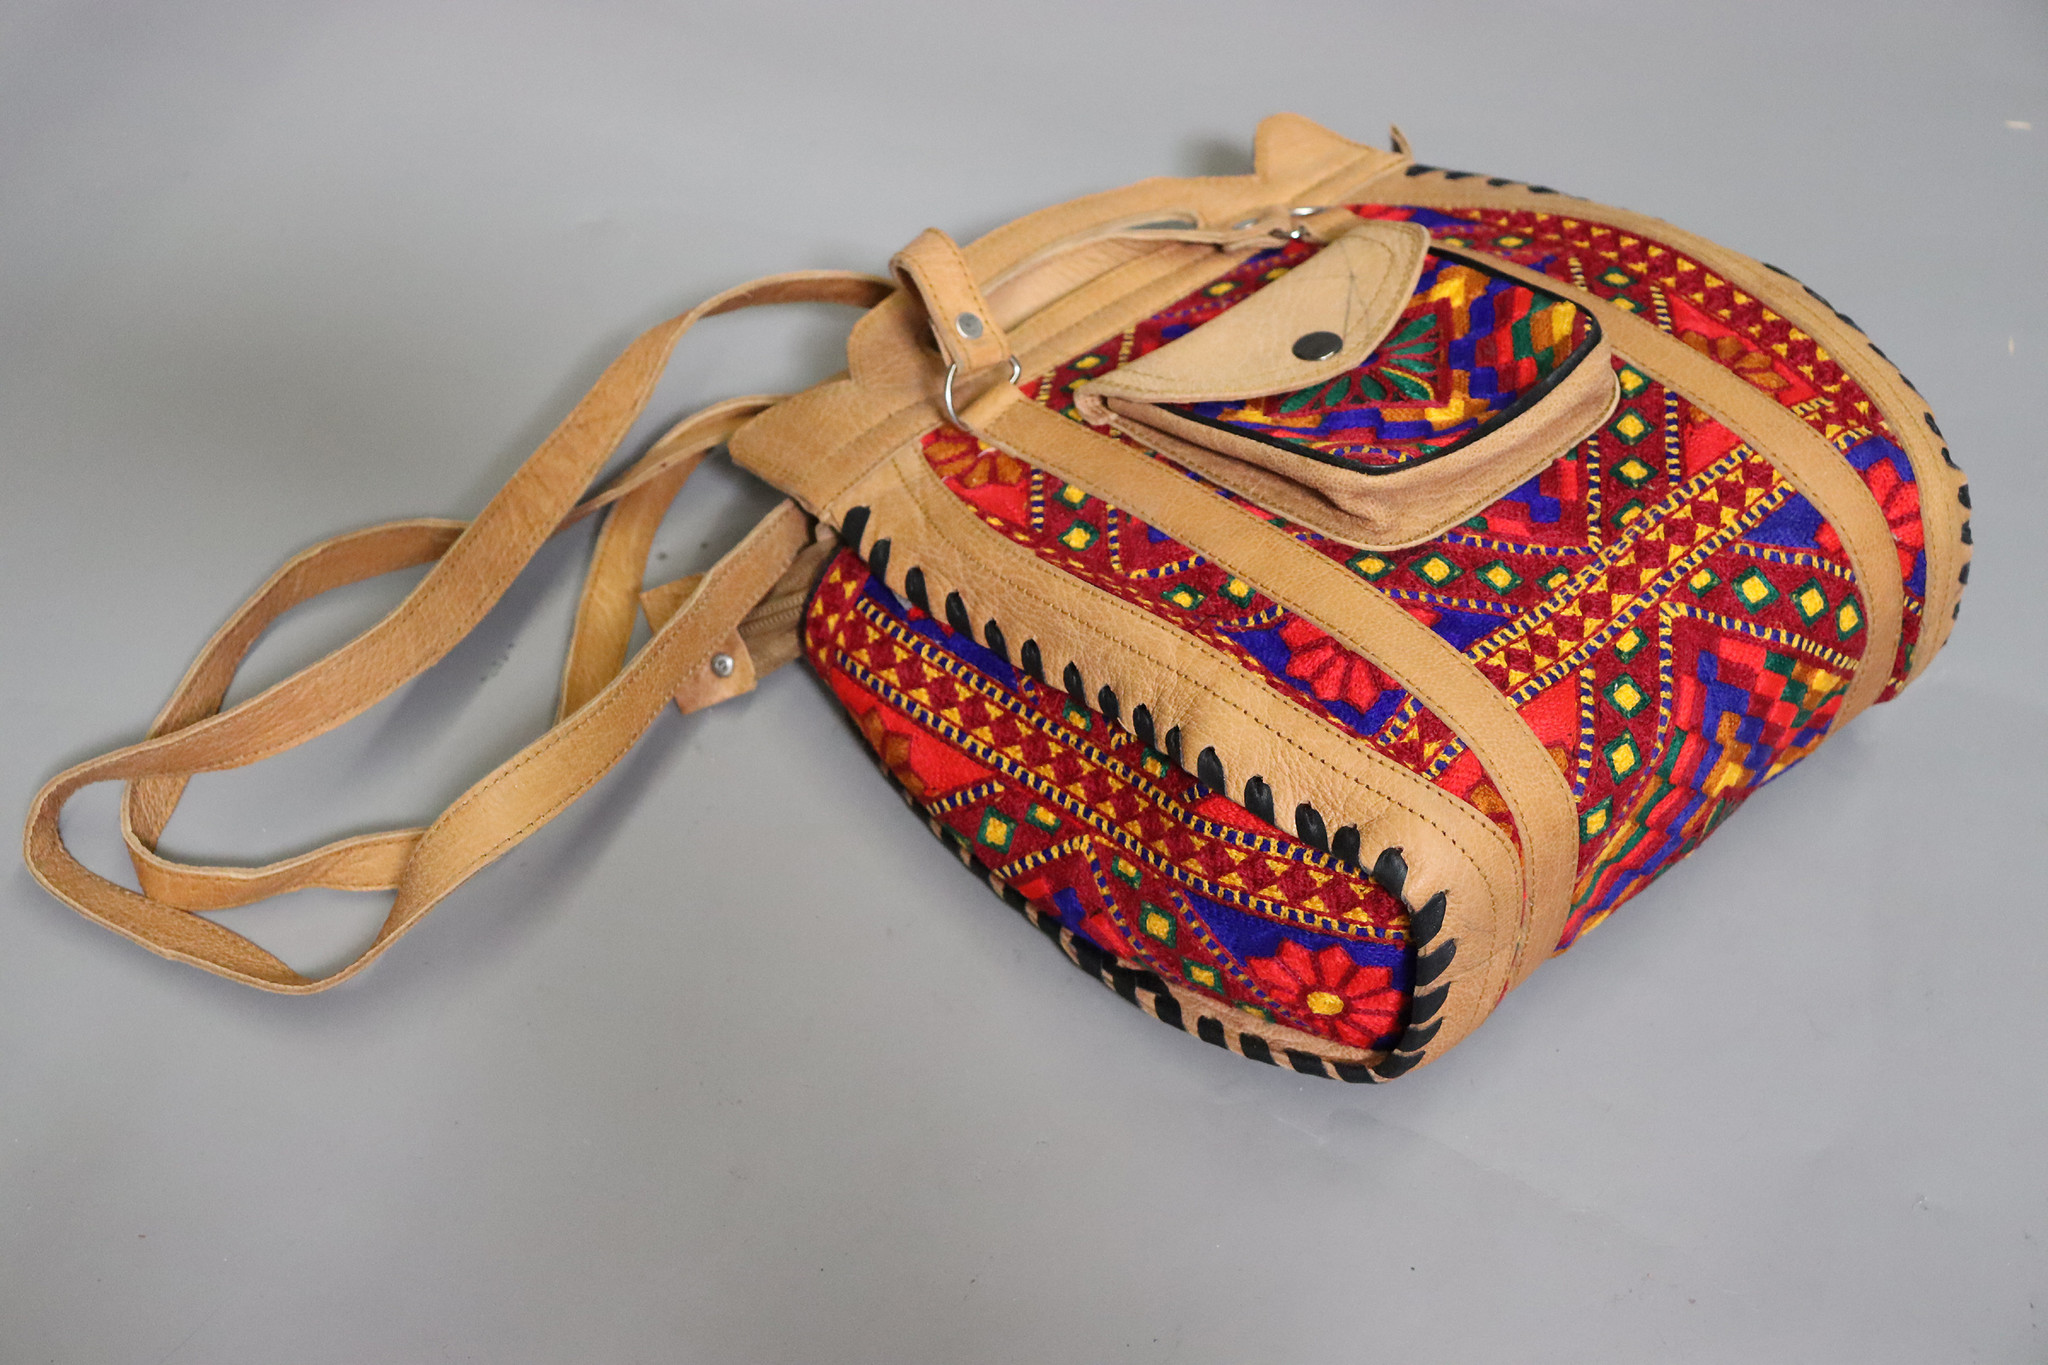 seltener Handgefertigte Leder und Suzani Frauen schultertasche Tasche damen umhängetasche handtasche shopper aus Kabul Afghanistan Nr:23-4